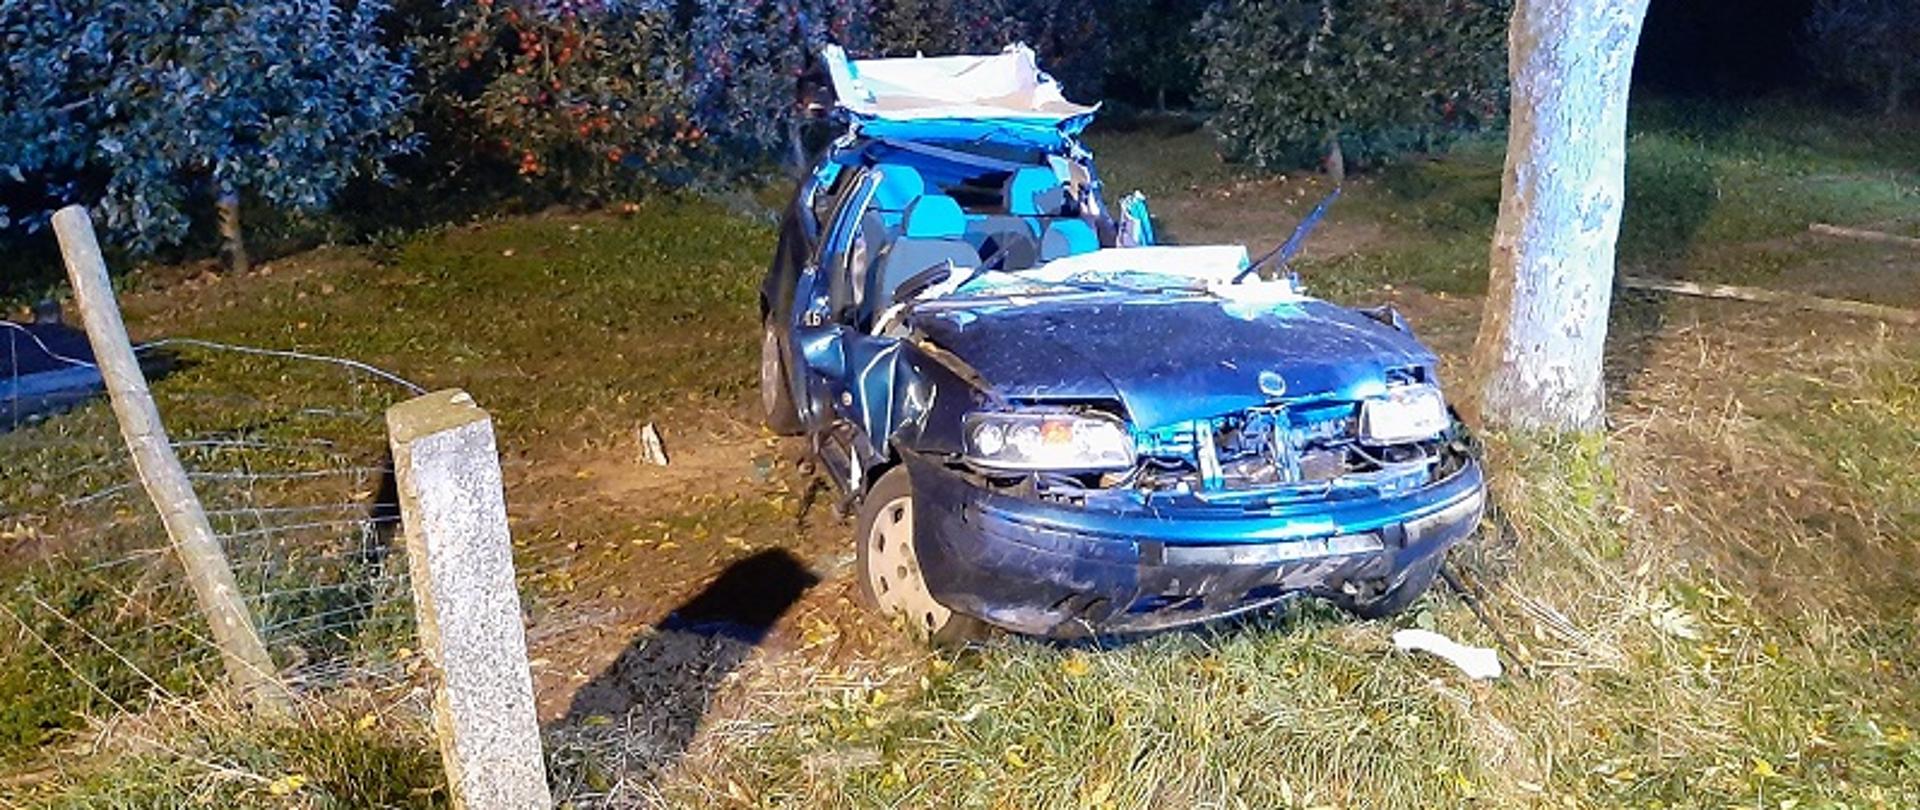 Zdjęcie przedstawia samochód osobowy marki Fiat Punto, który w porze nocnej uderzył w drzewo. Samochód ma całkowicie odcięty dach w wyniku działań ratowniczych strażaków.